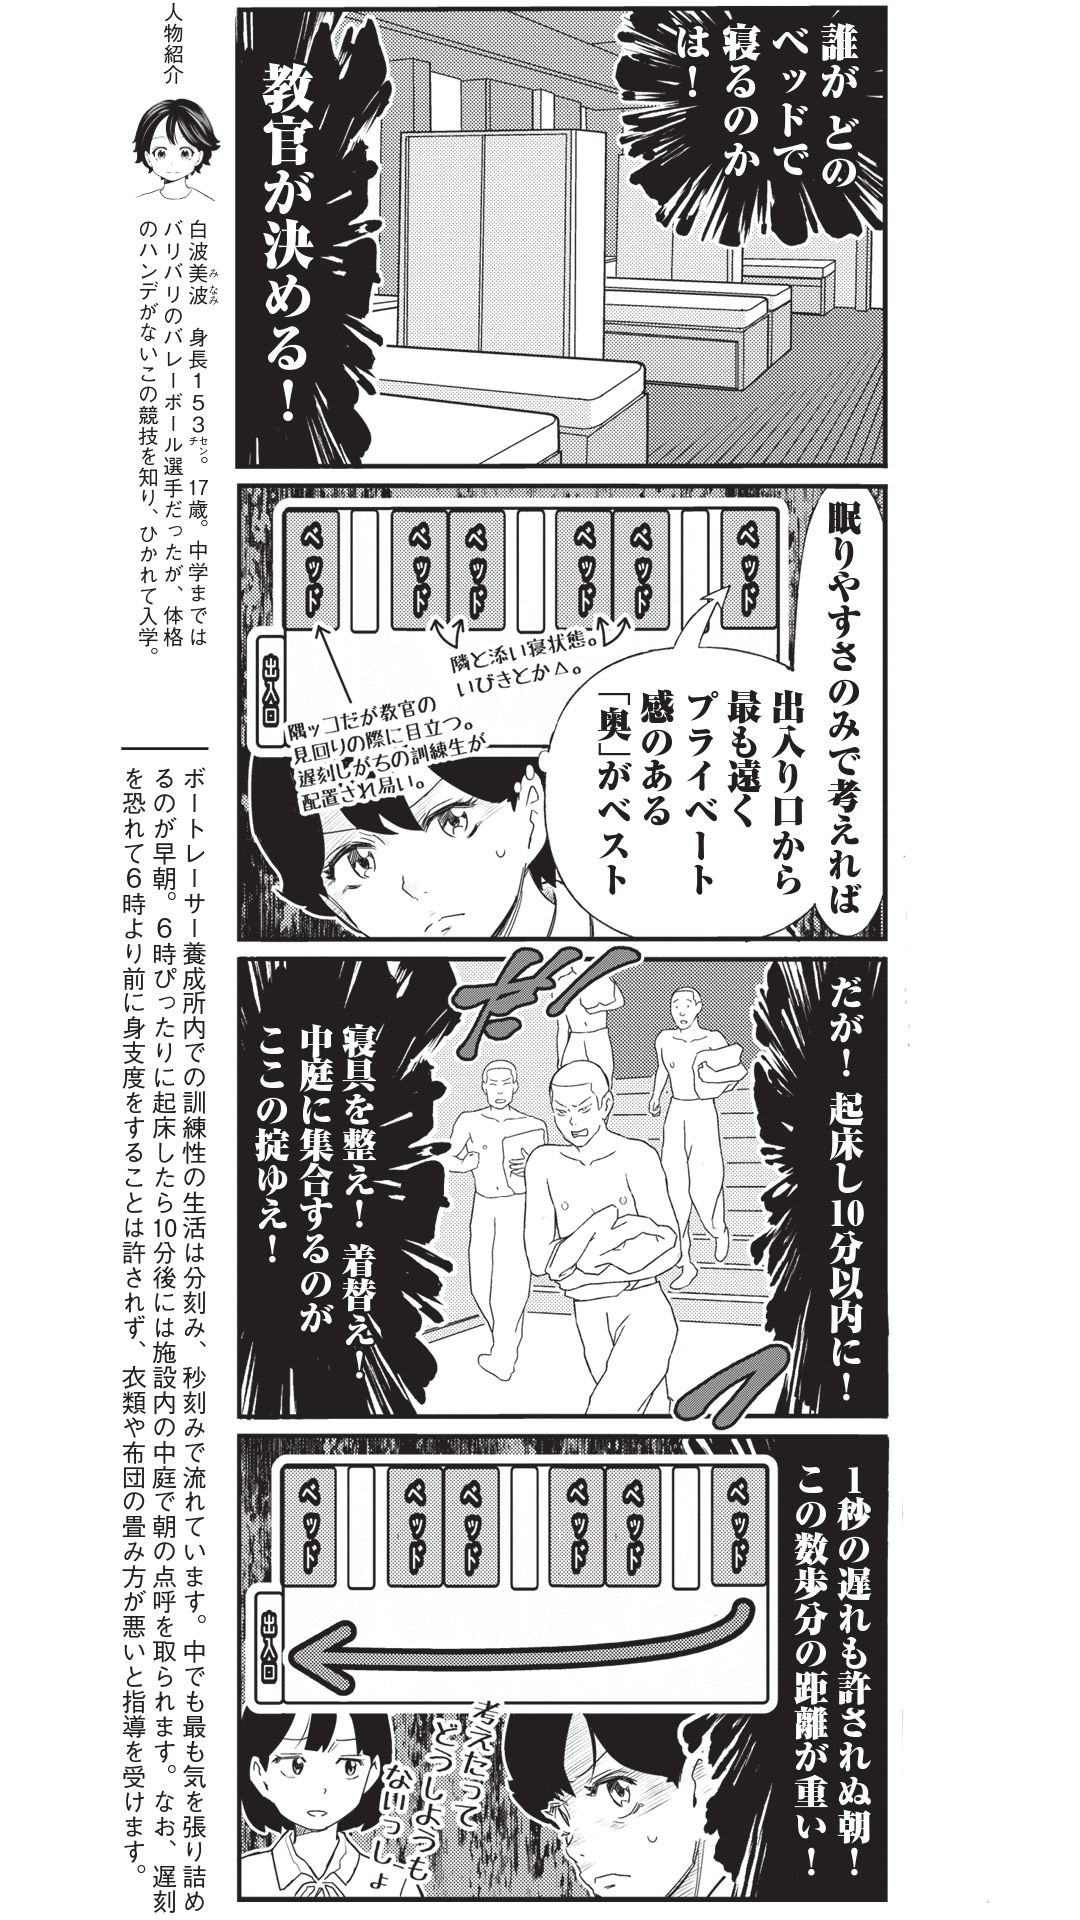 4コマ漫画『ボートレース訓練生・美波』こぼれ話「ベッドの位置は重要？」の画像